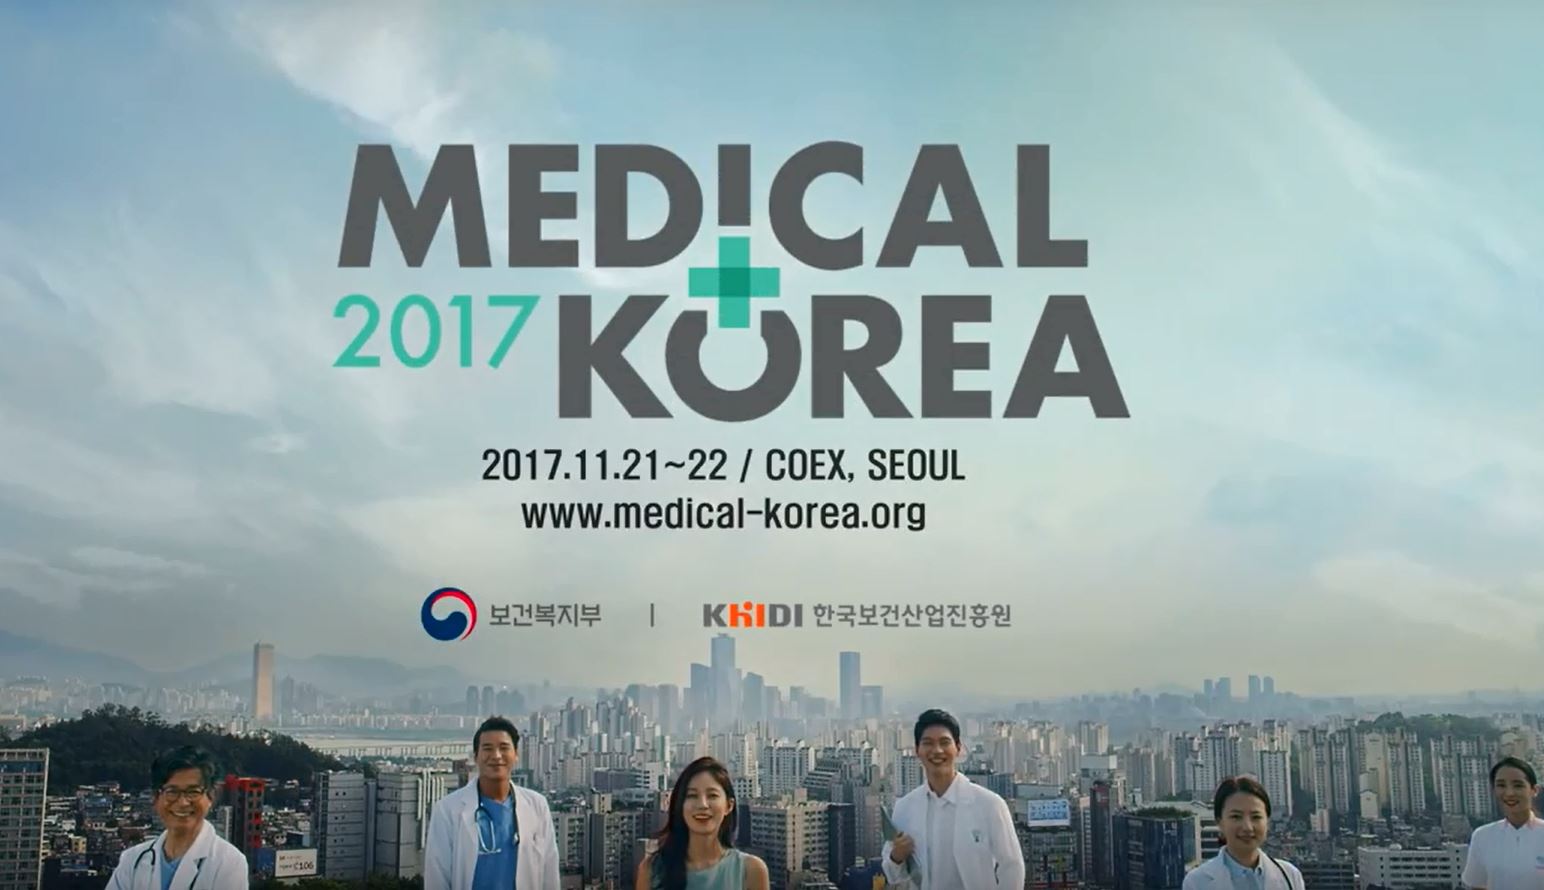 Medical Korea 2017 (메디컬코리아 컨퍼런스, 11.21~22) 개최 안내(60초 홍보영상)